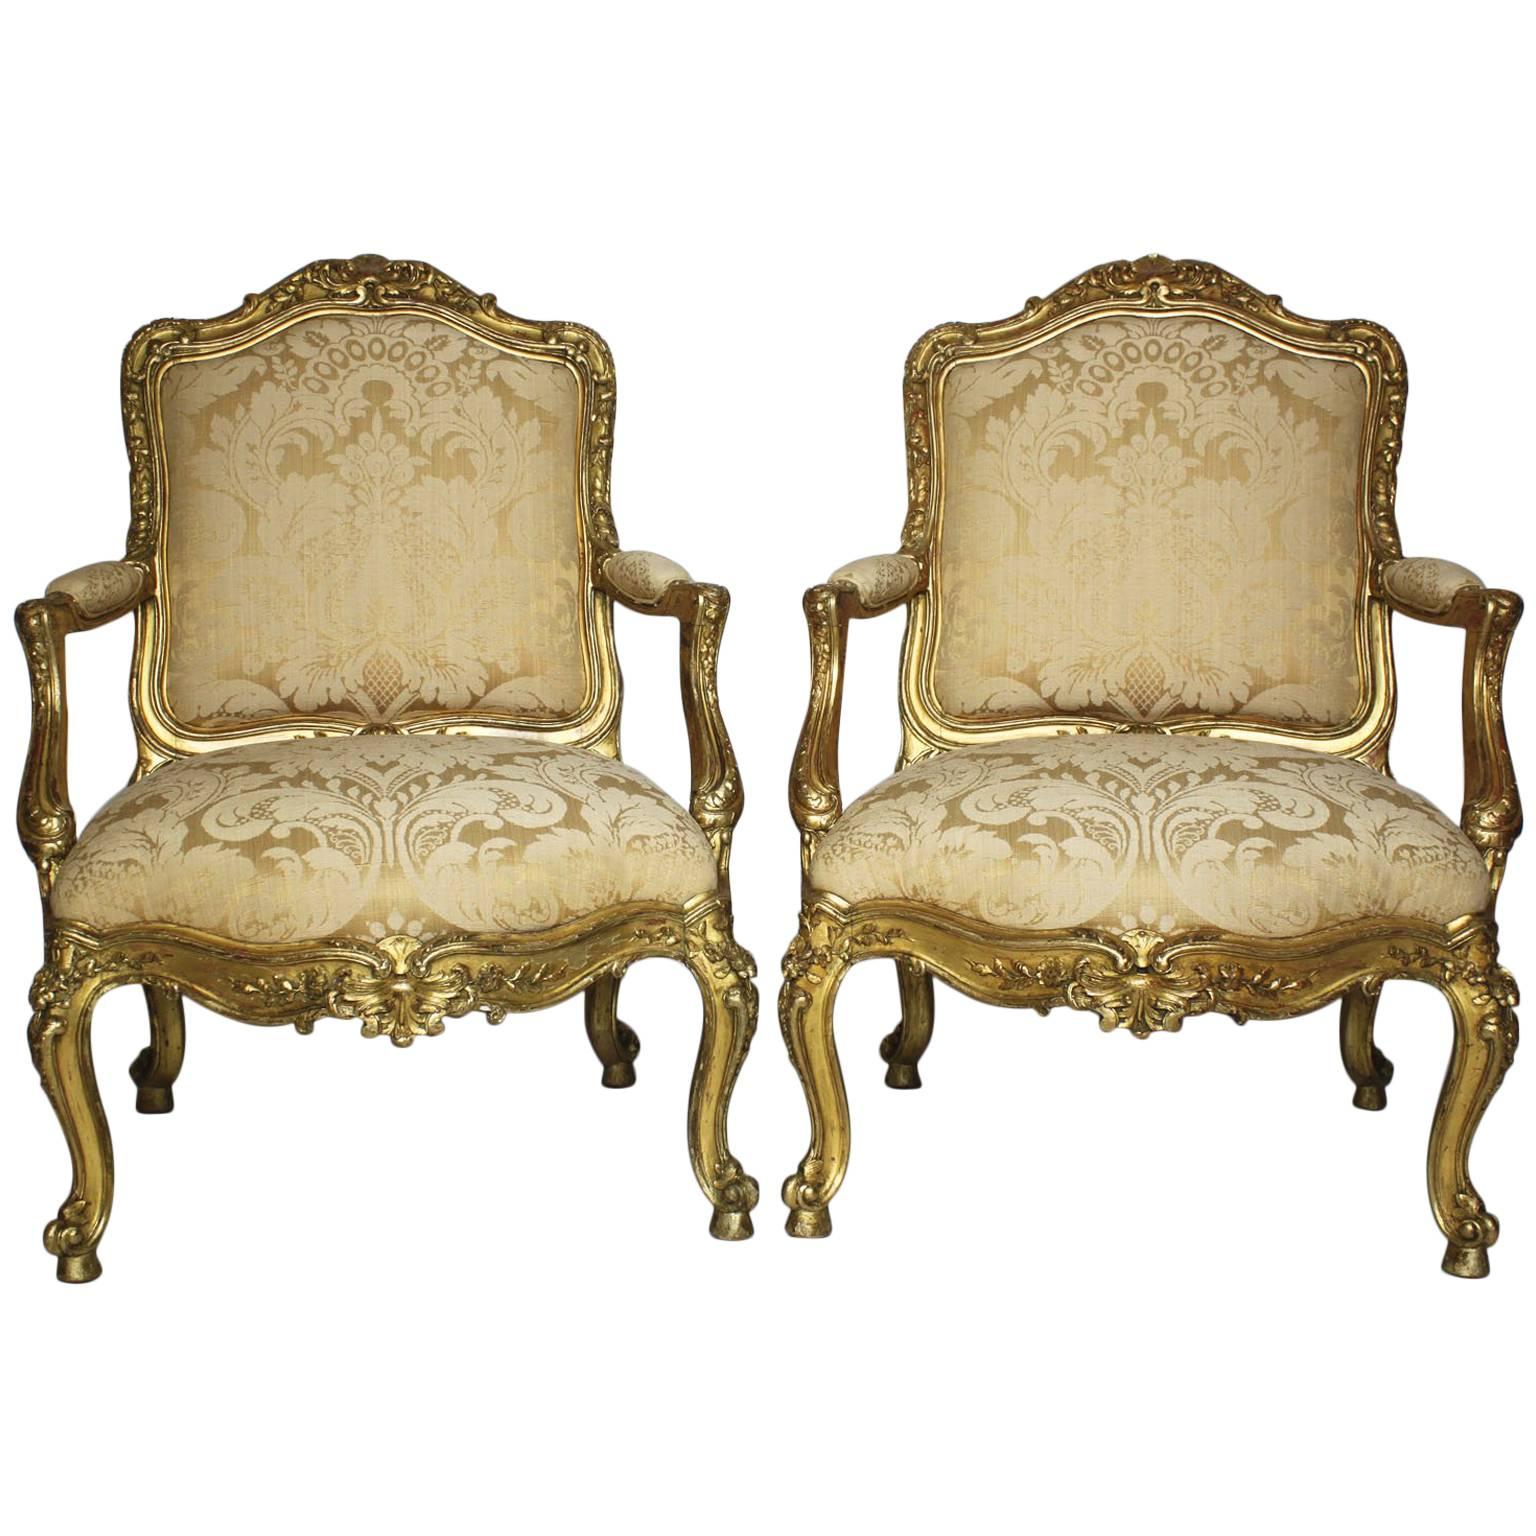 Paire de fauteuils italiens de style rococo du 19ème siècle en bois doré sculpté, vers 1860